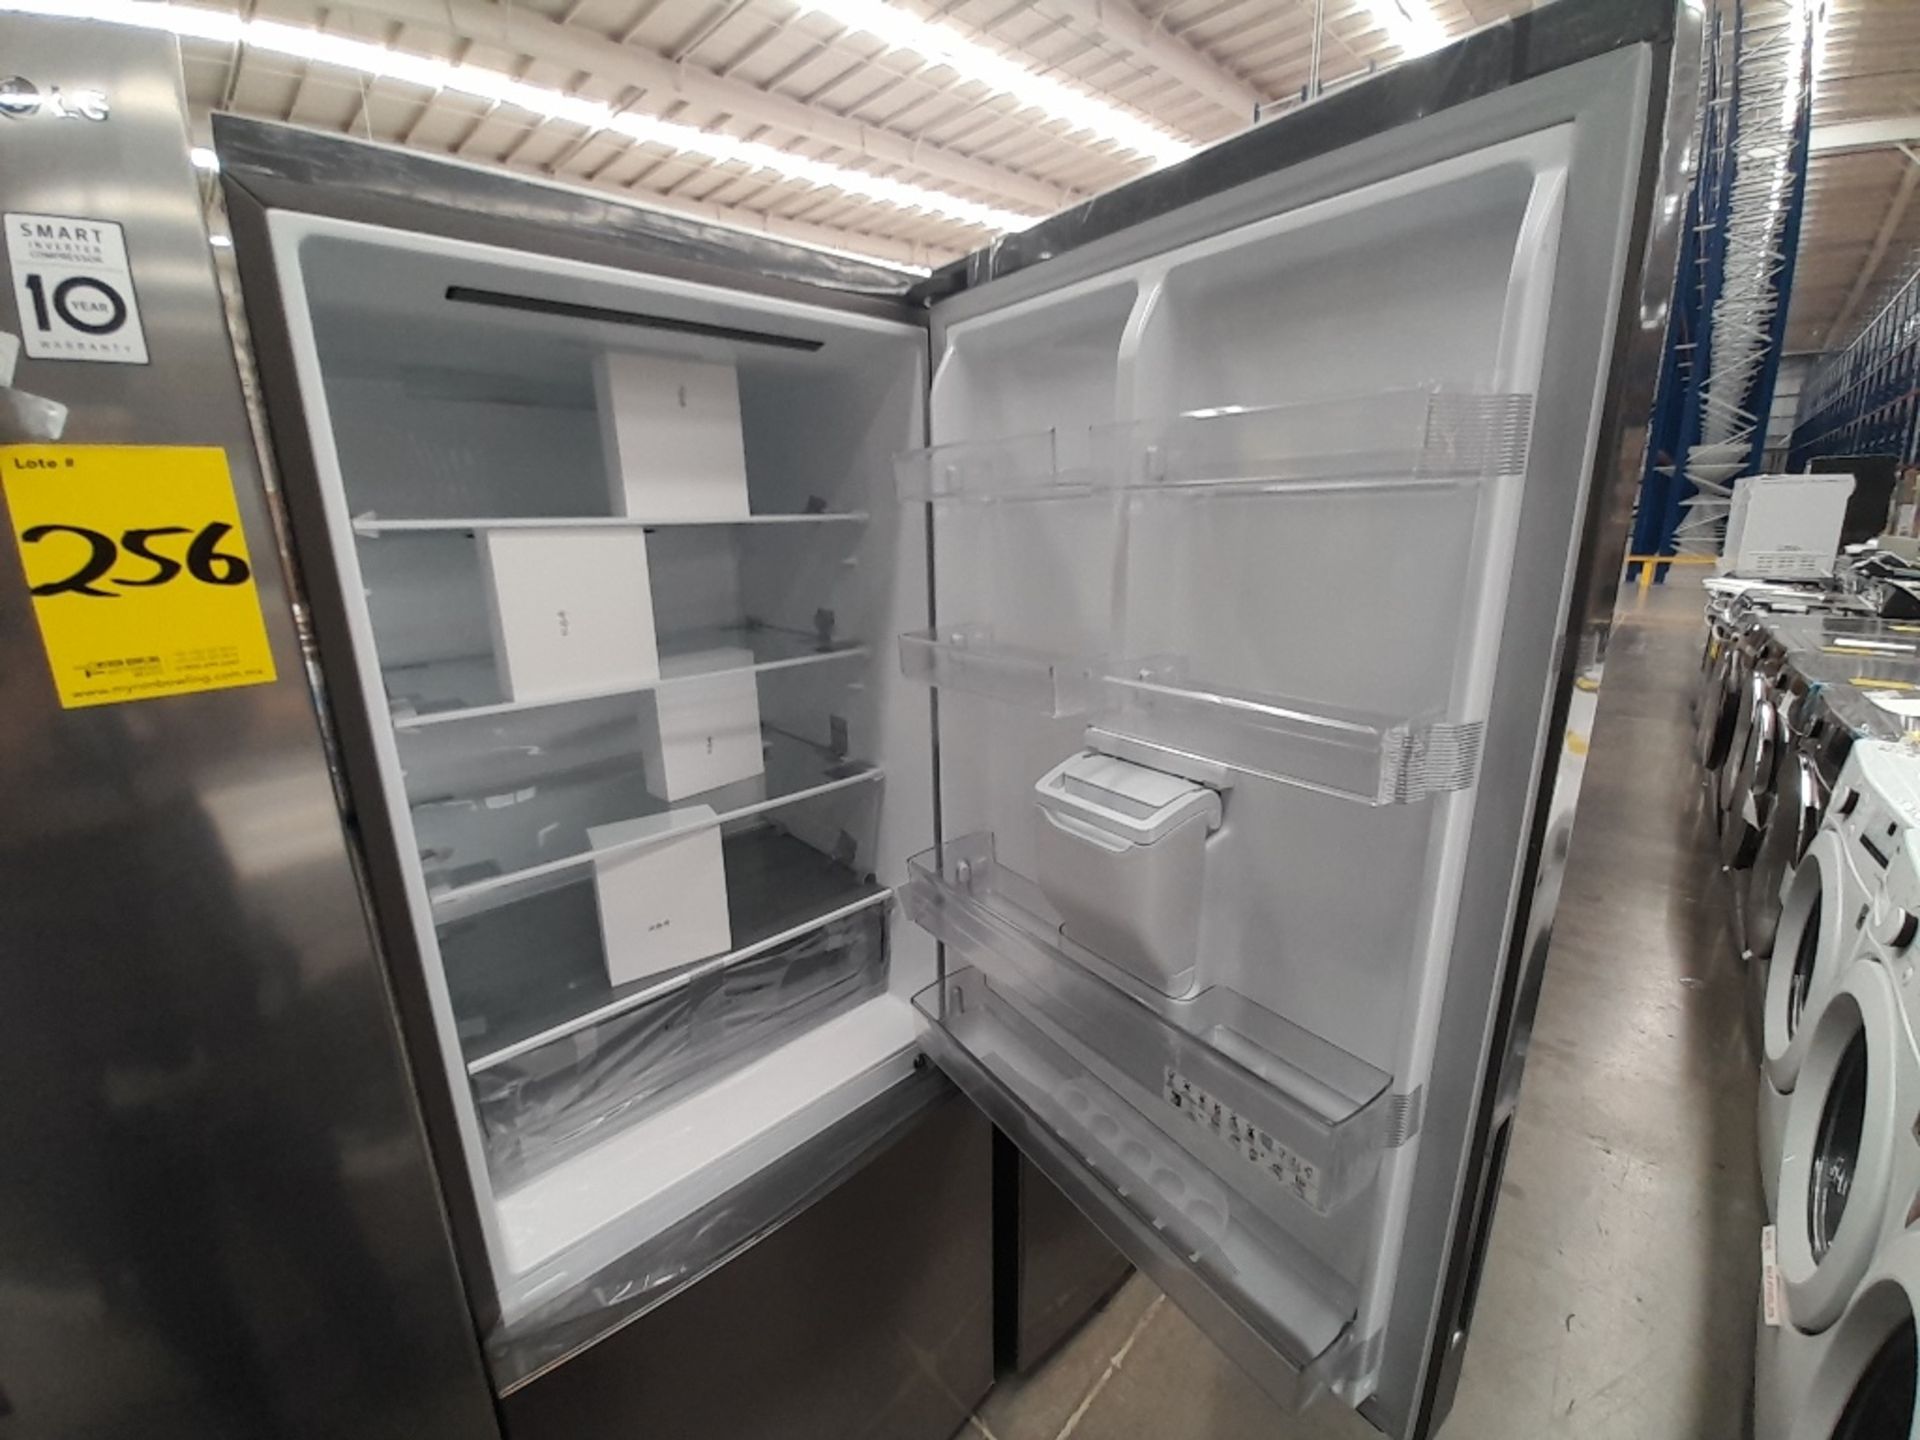 Lote de 2 refrigeradores contiene: 1 refrigerador con dispensador de agua Marca LG, Modelo GB45SPP, - Image 6 of 8